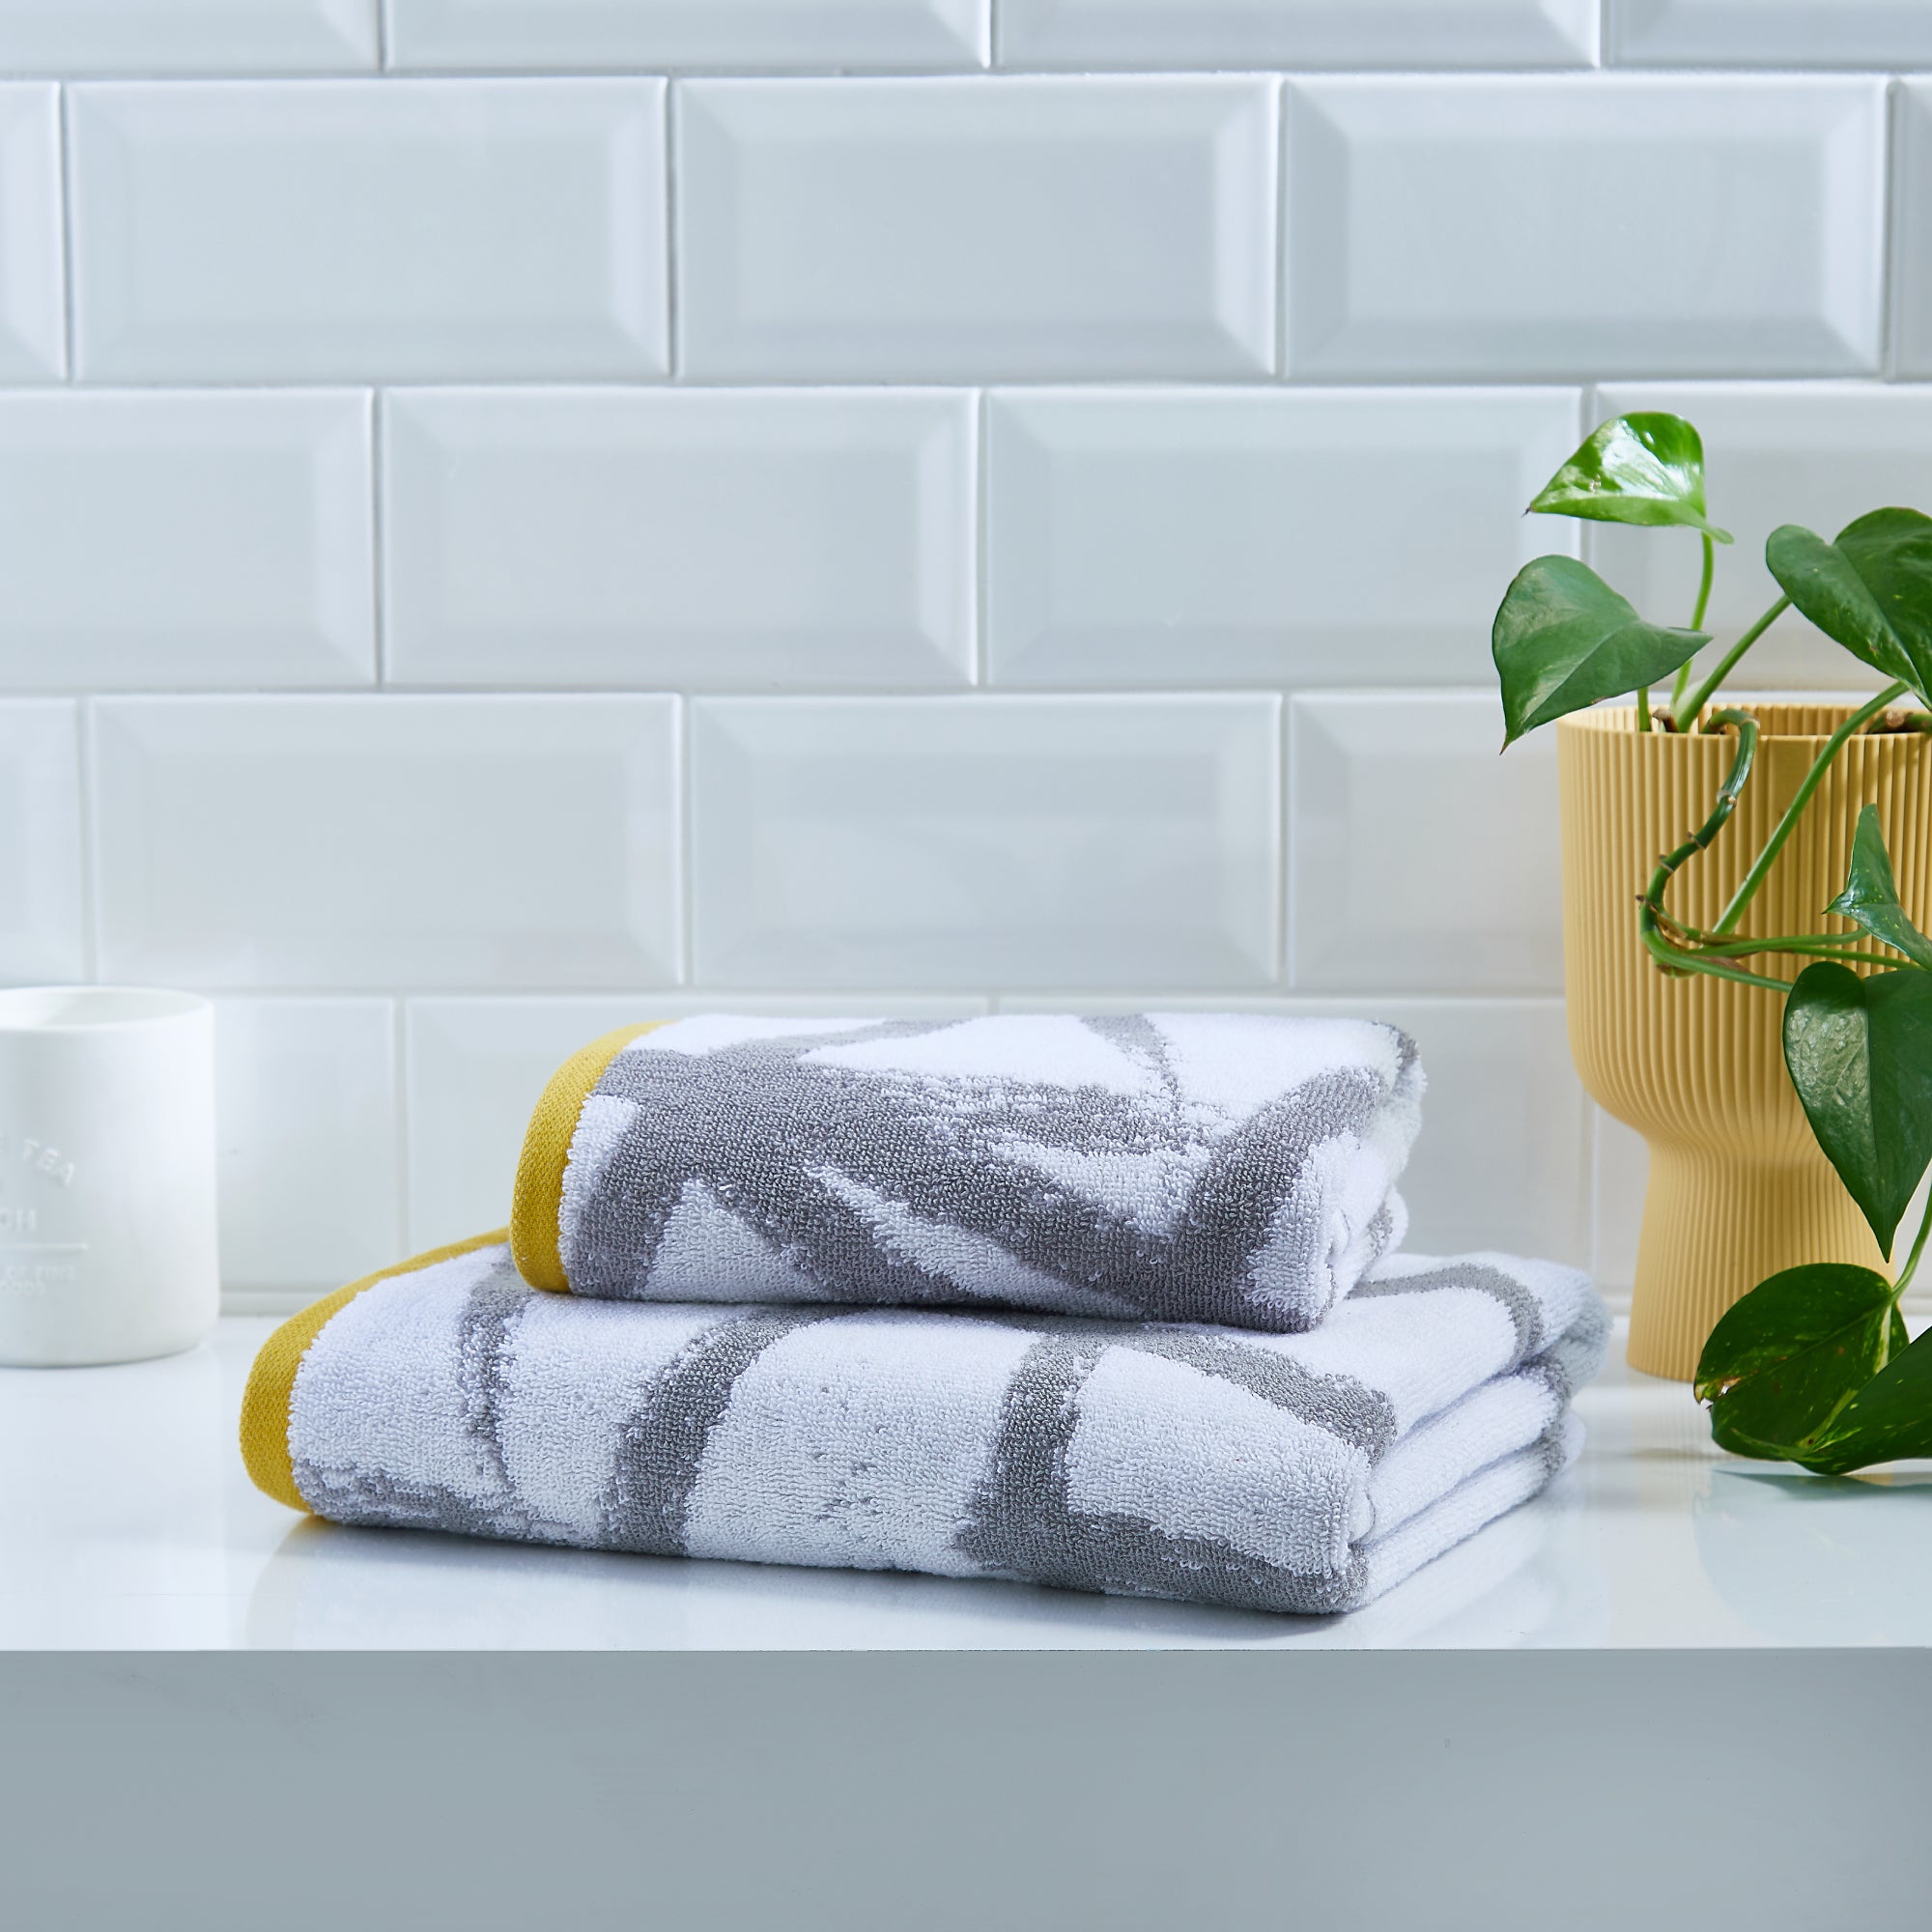 Leda Hand and Bath Towels by Fusion Bathroom in Grey/Ochre